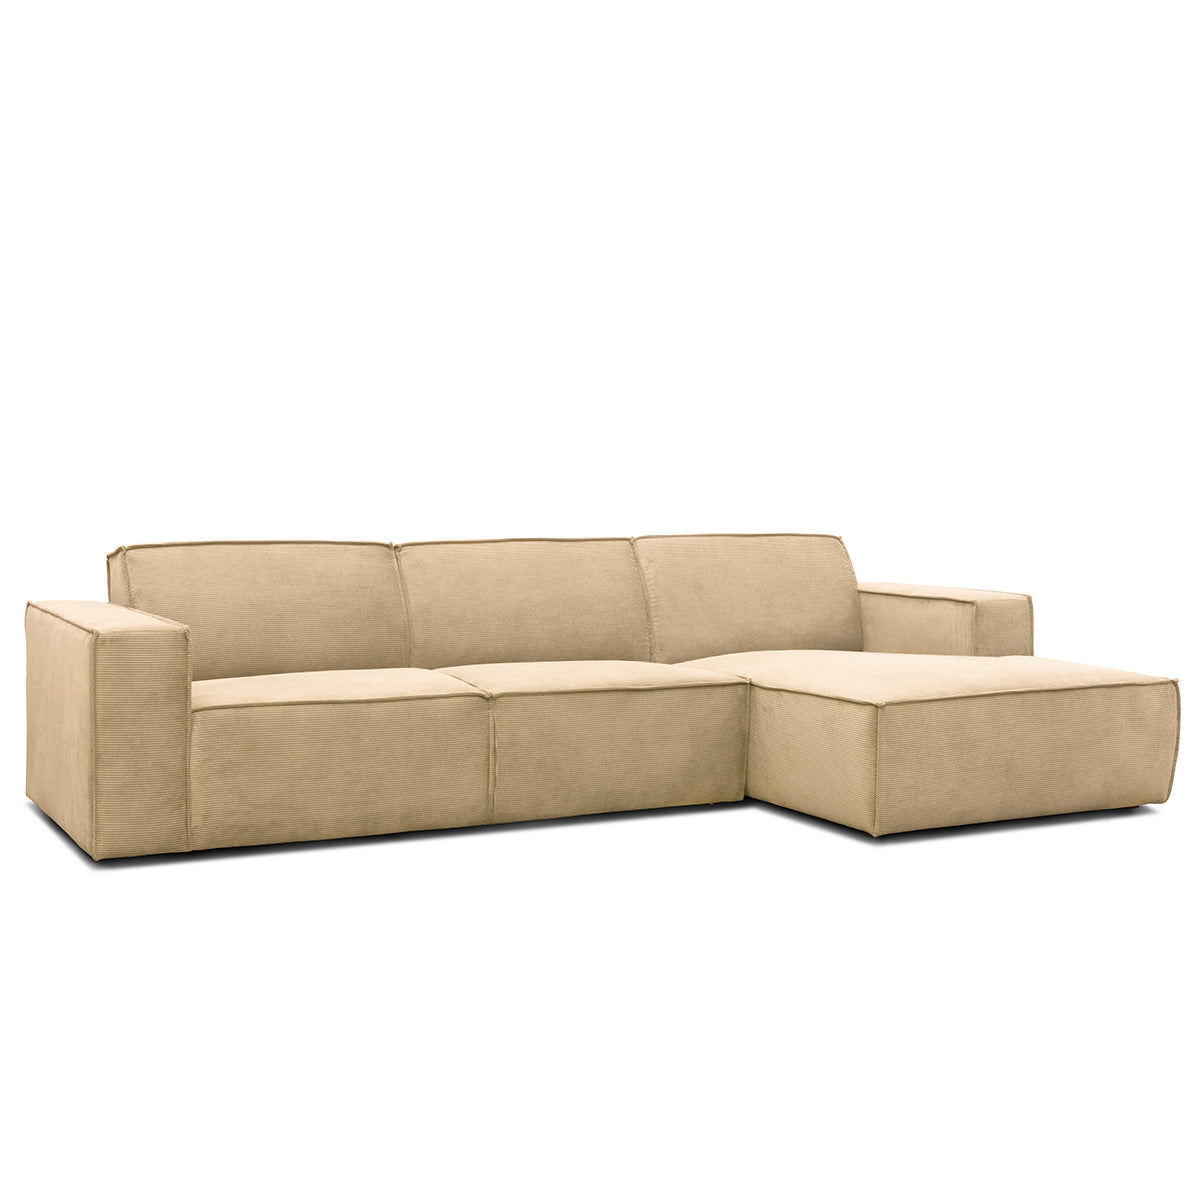 Lyon højrevendt sofa med chaiselong, fløjl - Møbelkompagniet